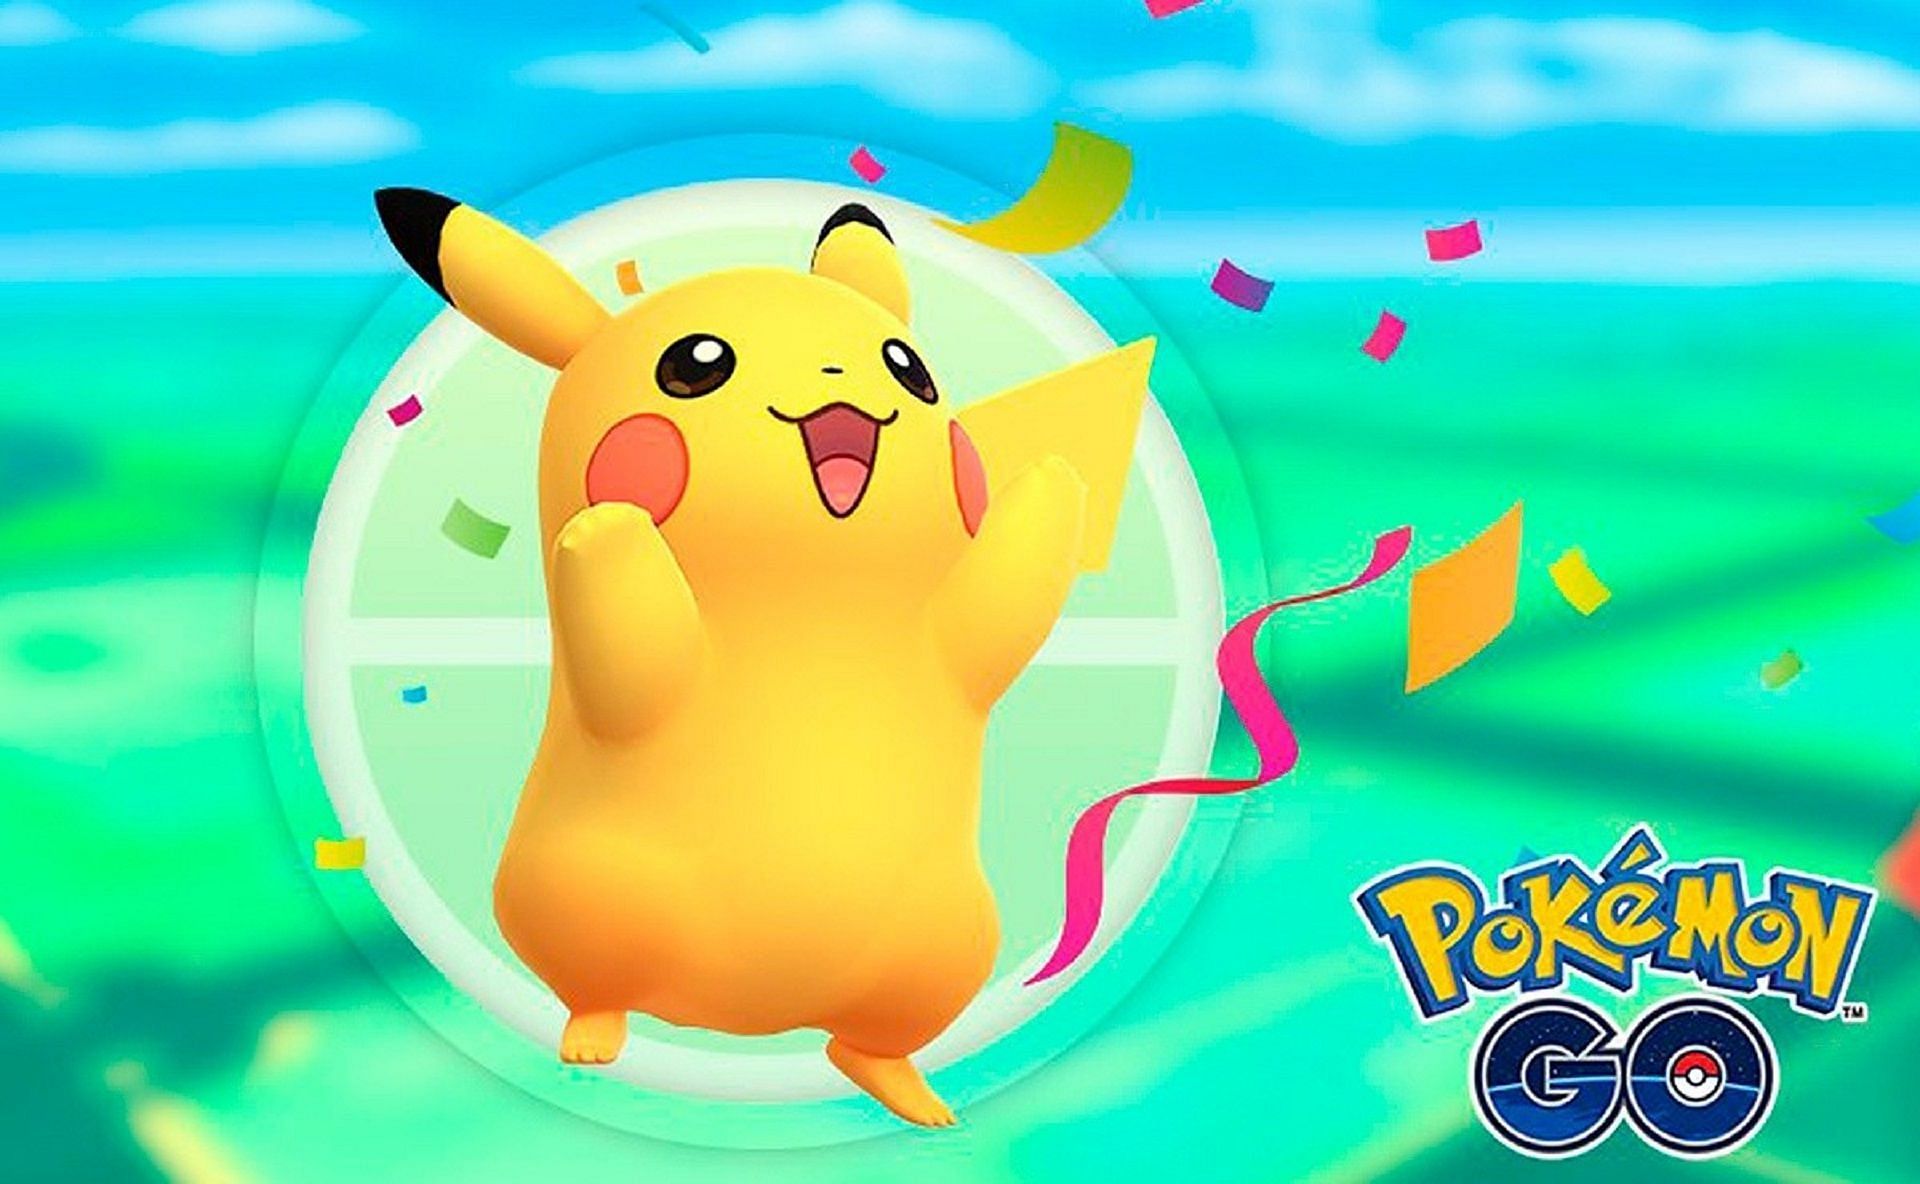 Pikachu celebrates in the confetti in Pokemon GO (Image via Niantic)